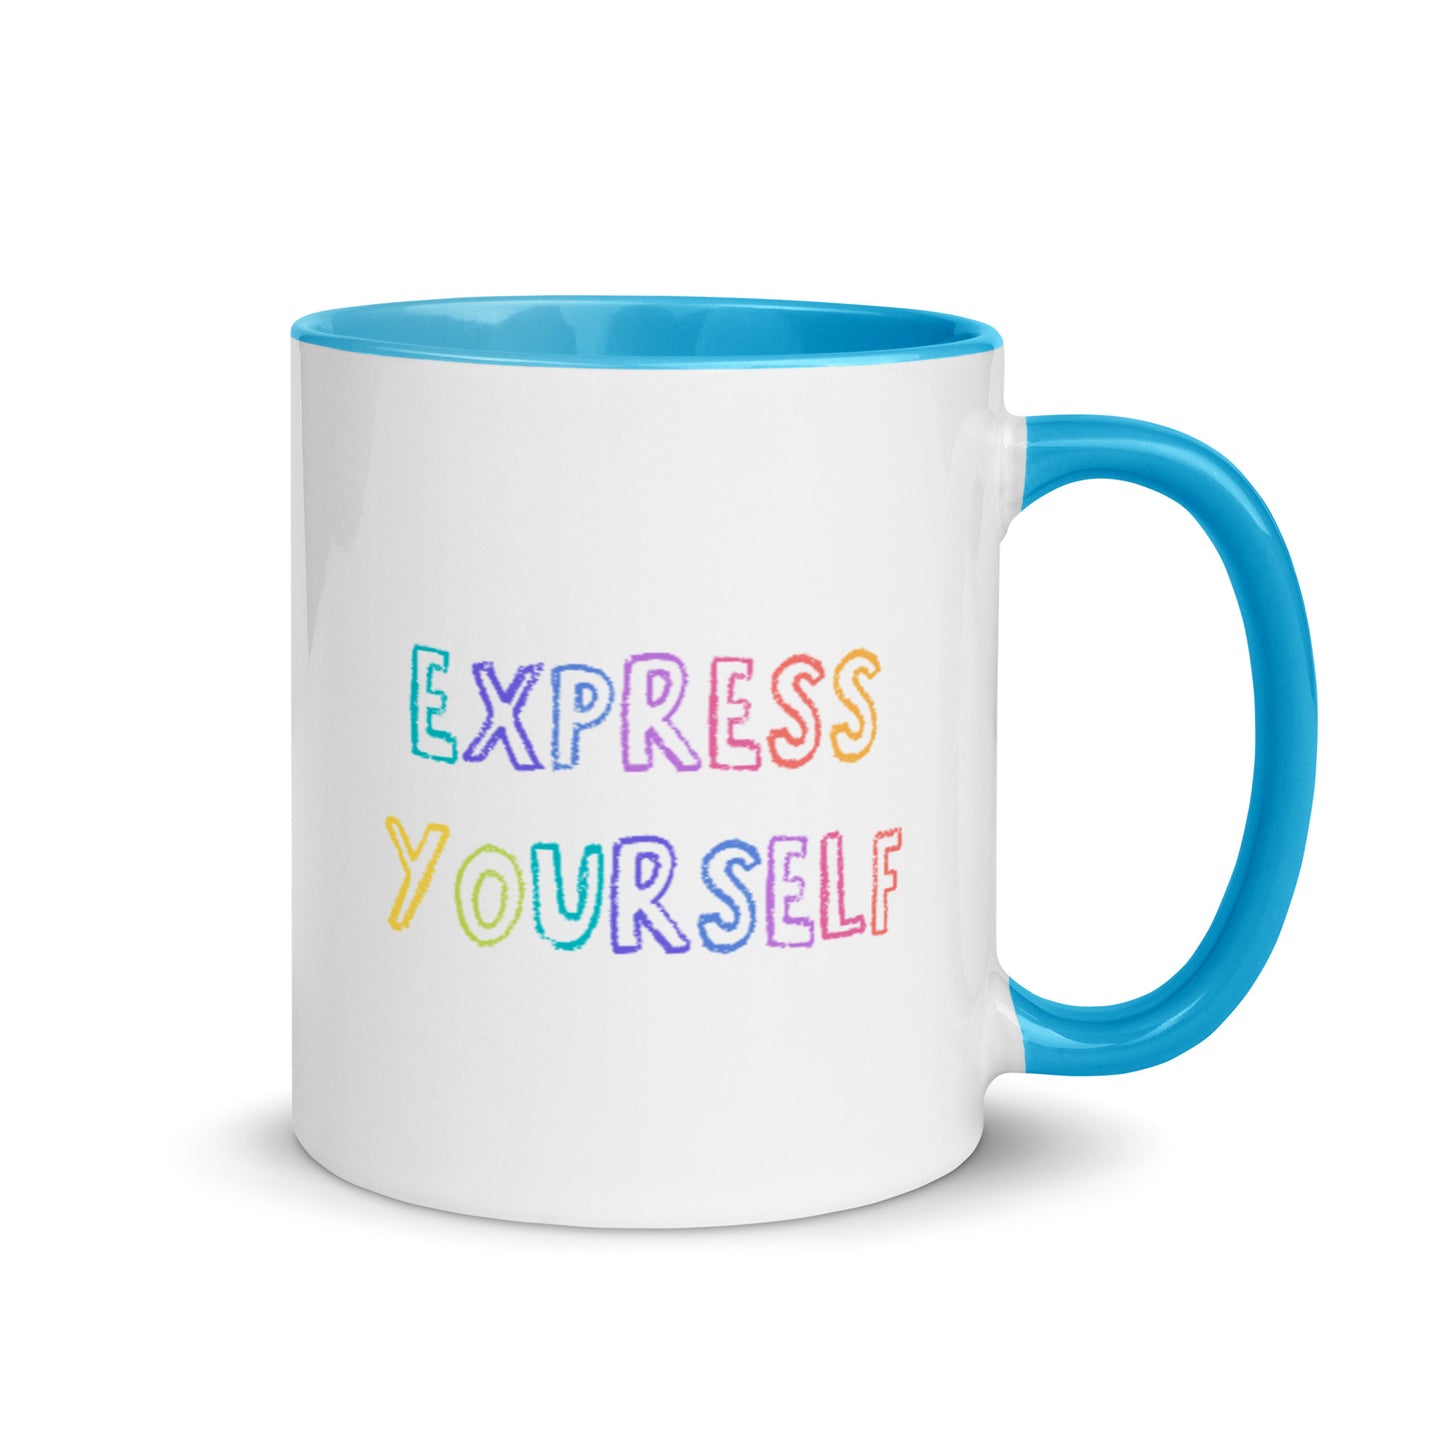 Express Yourself Mug